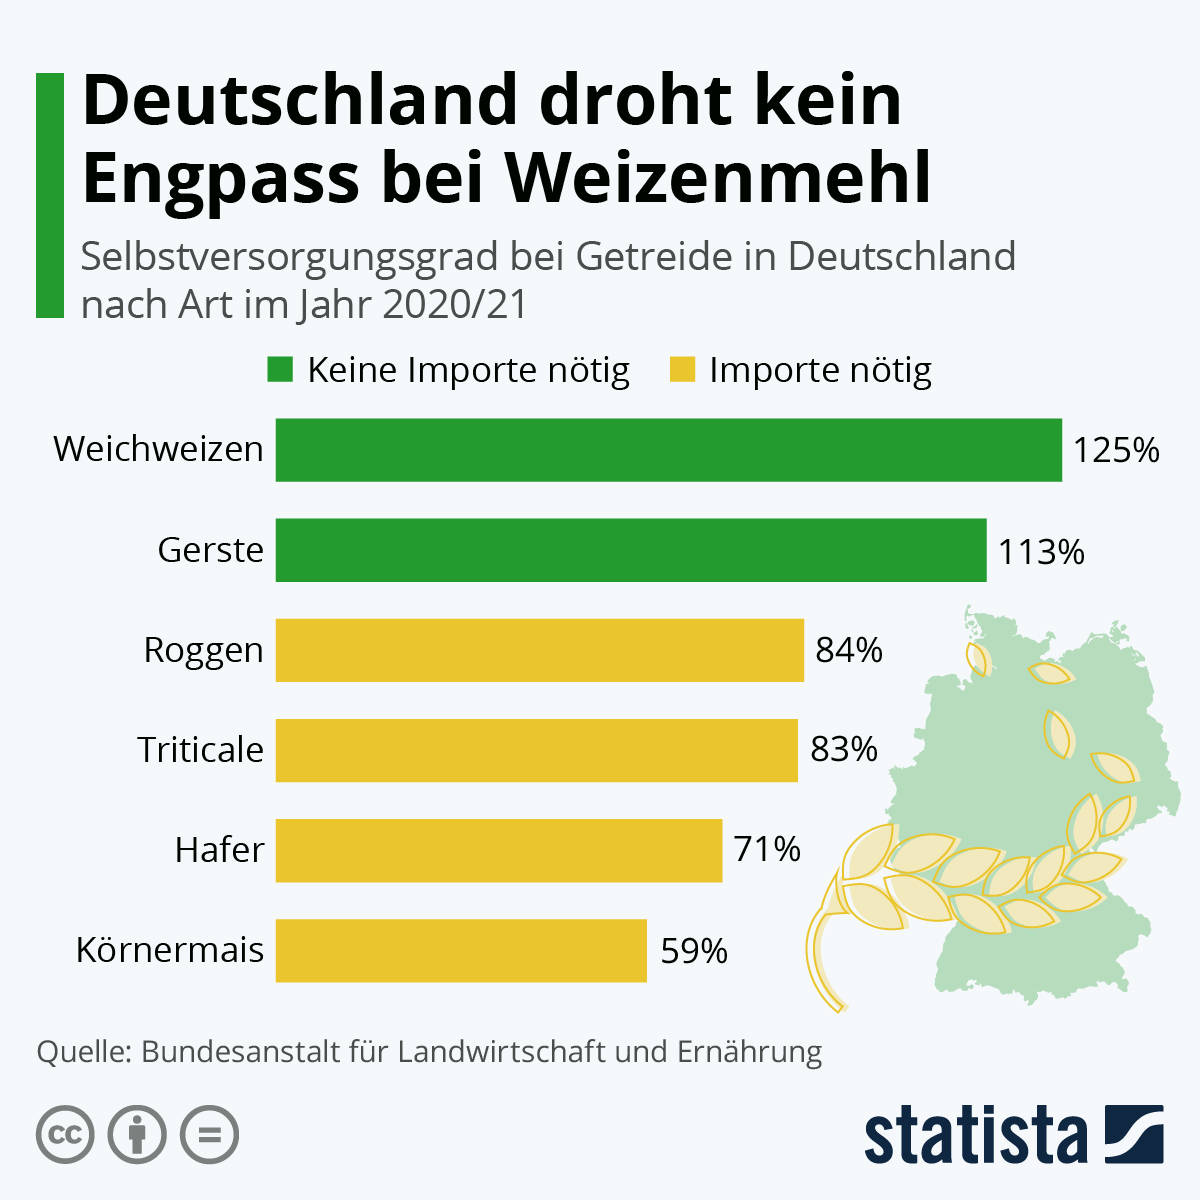 Infographic: Duitsland wordt niet bedreigd door een tekort aan tarwebloem | extra